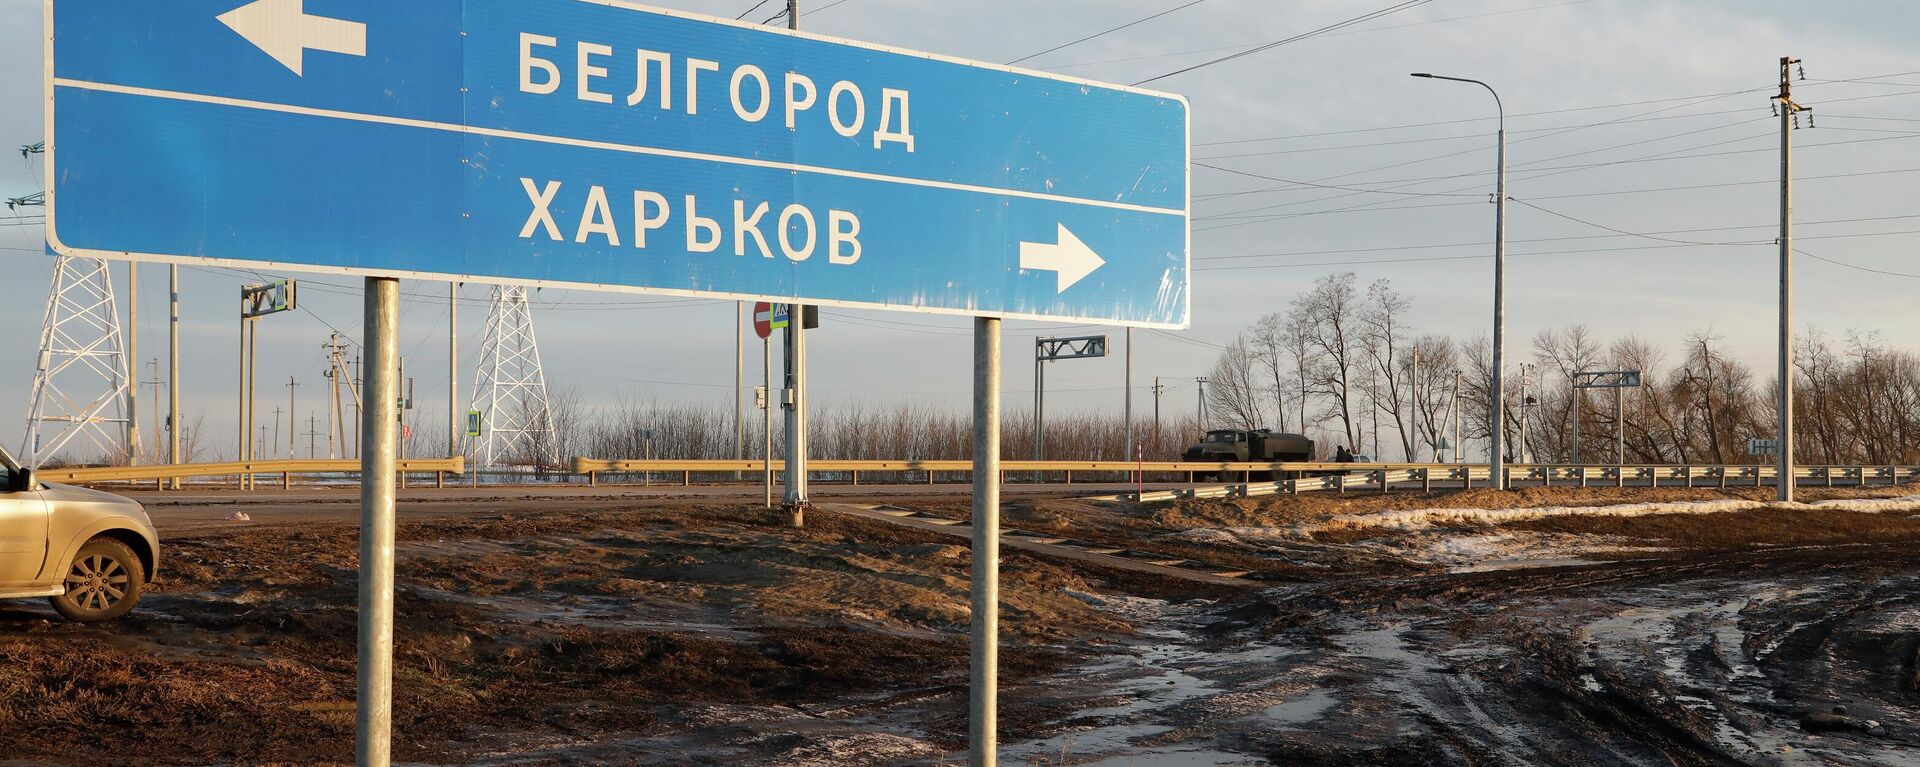 Placa rodoviária apontando para Belgorod, na Rússia (à esquerda), e Carcóvia, na Ucrânia (à direita). - Sputnik Brasil, 1920, 11.03.2022